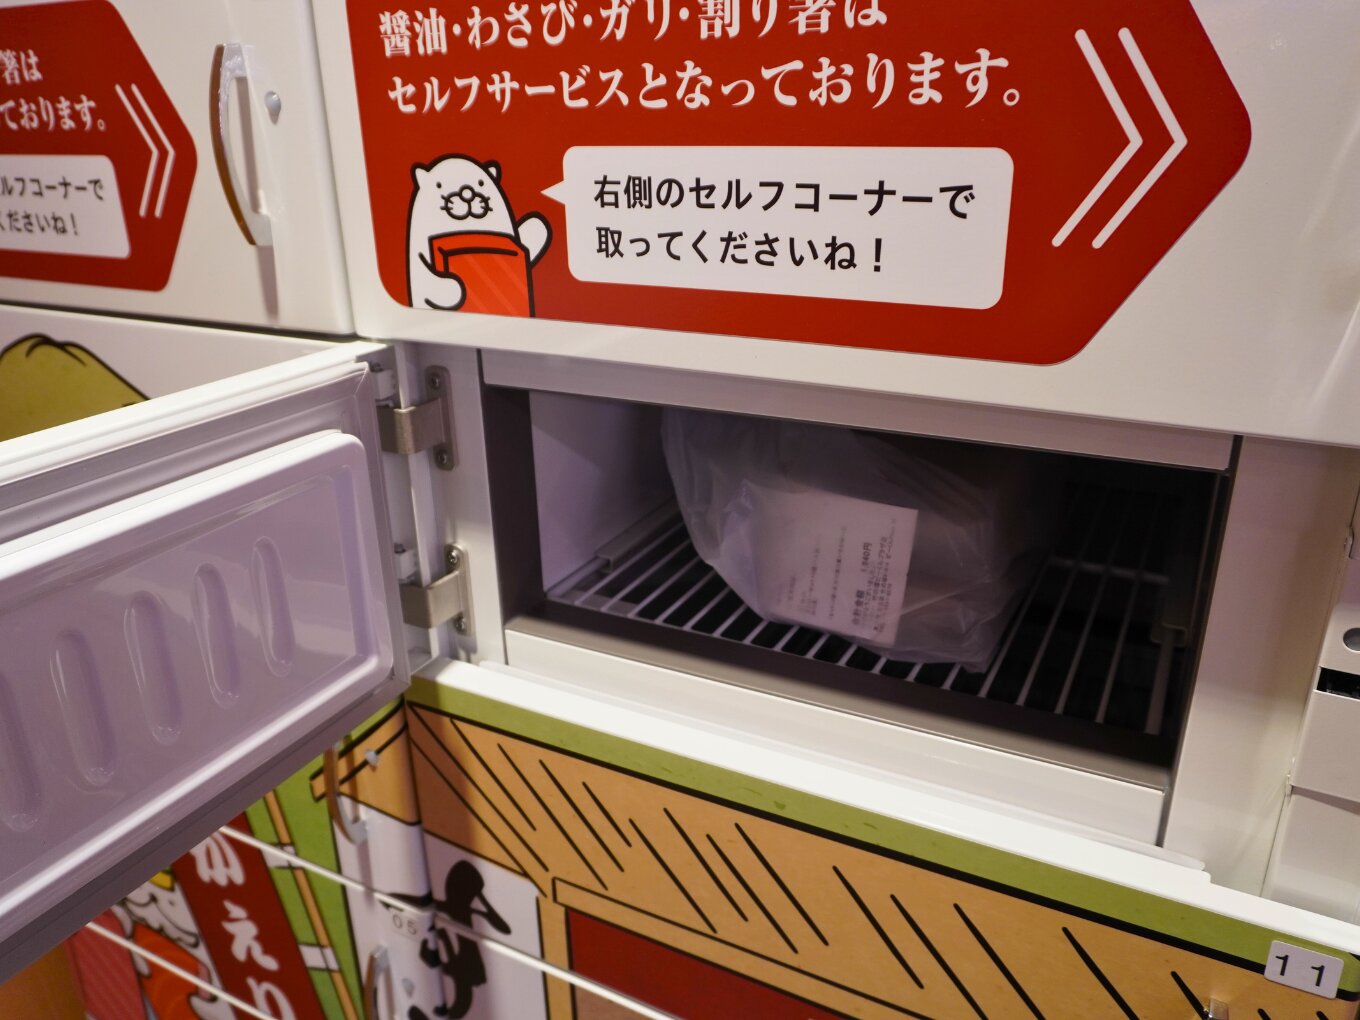 自動ロッカーの中ではお寿司が適温で保管されている